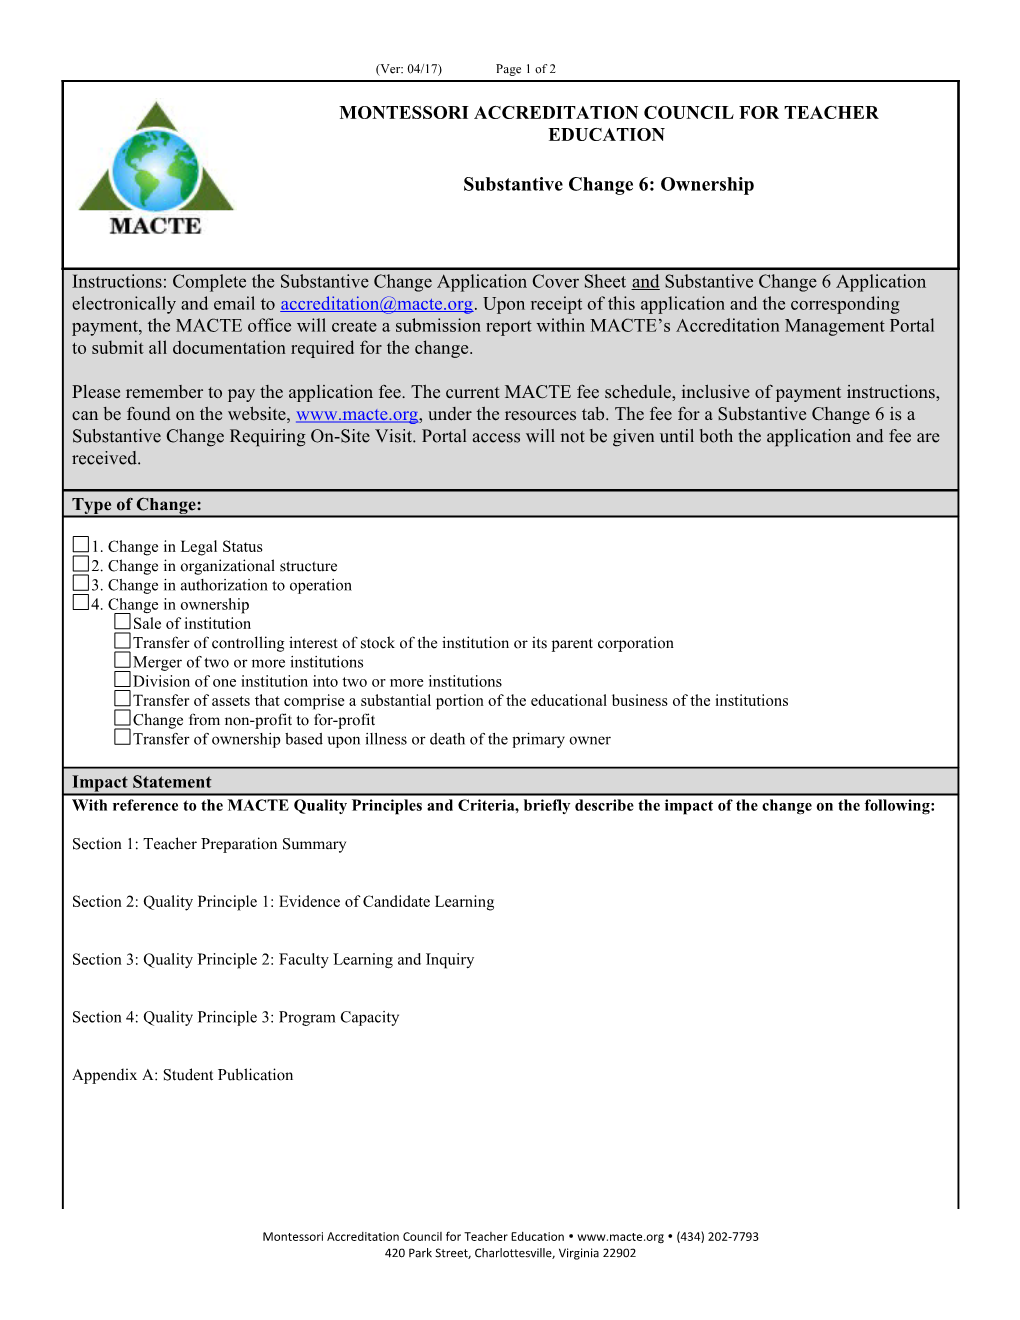 Montessori Accreditation Council for Teacher Education (434) 202-7793